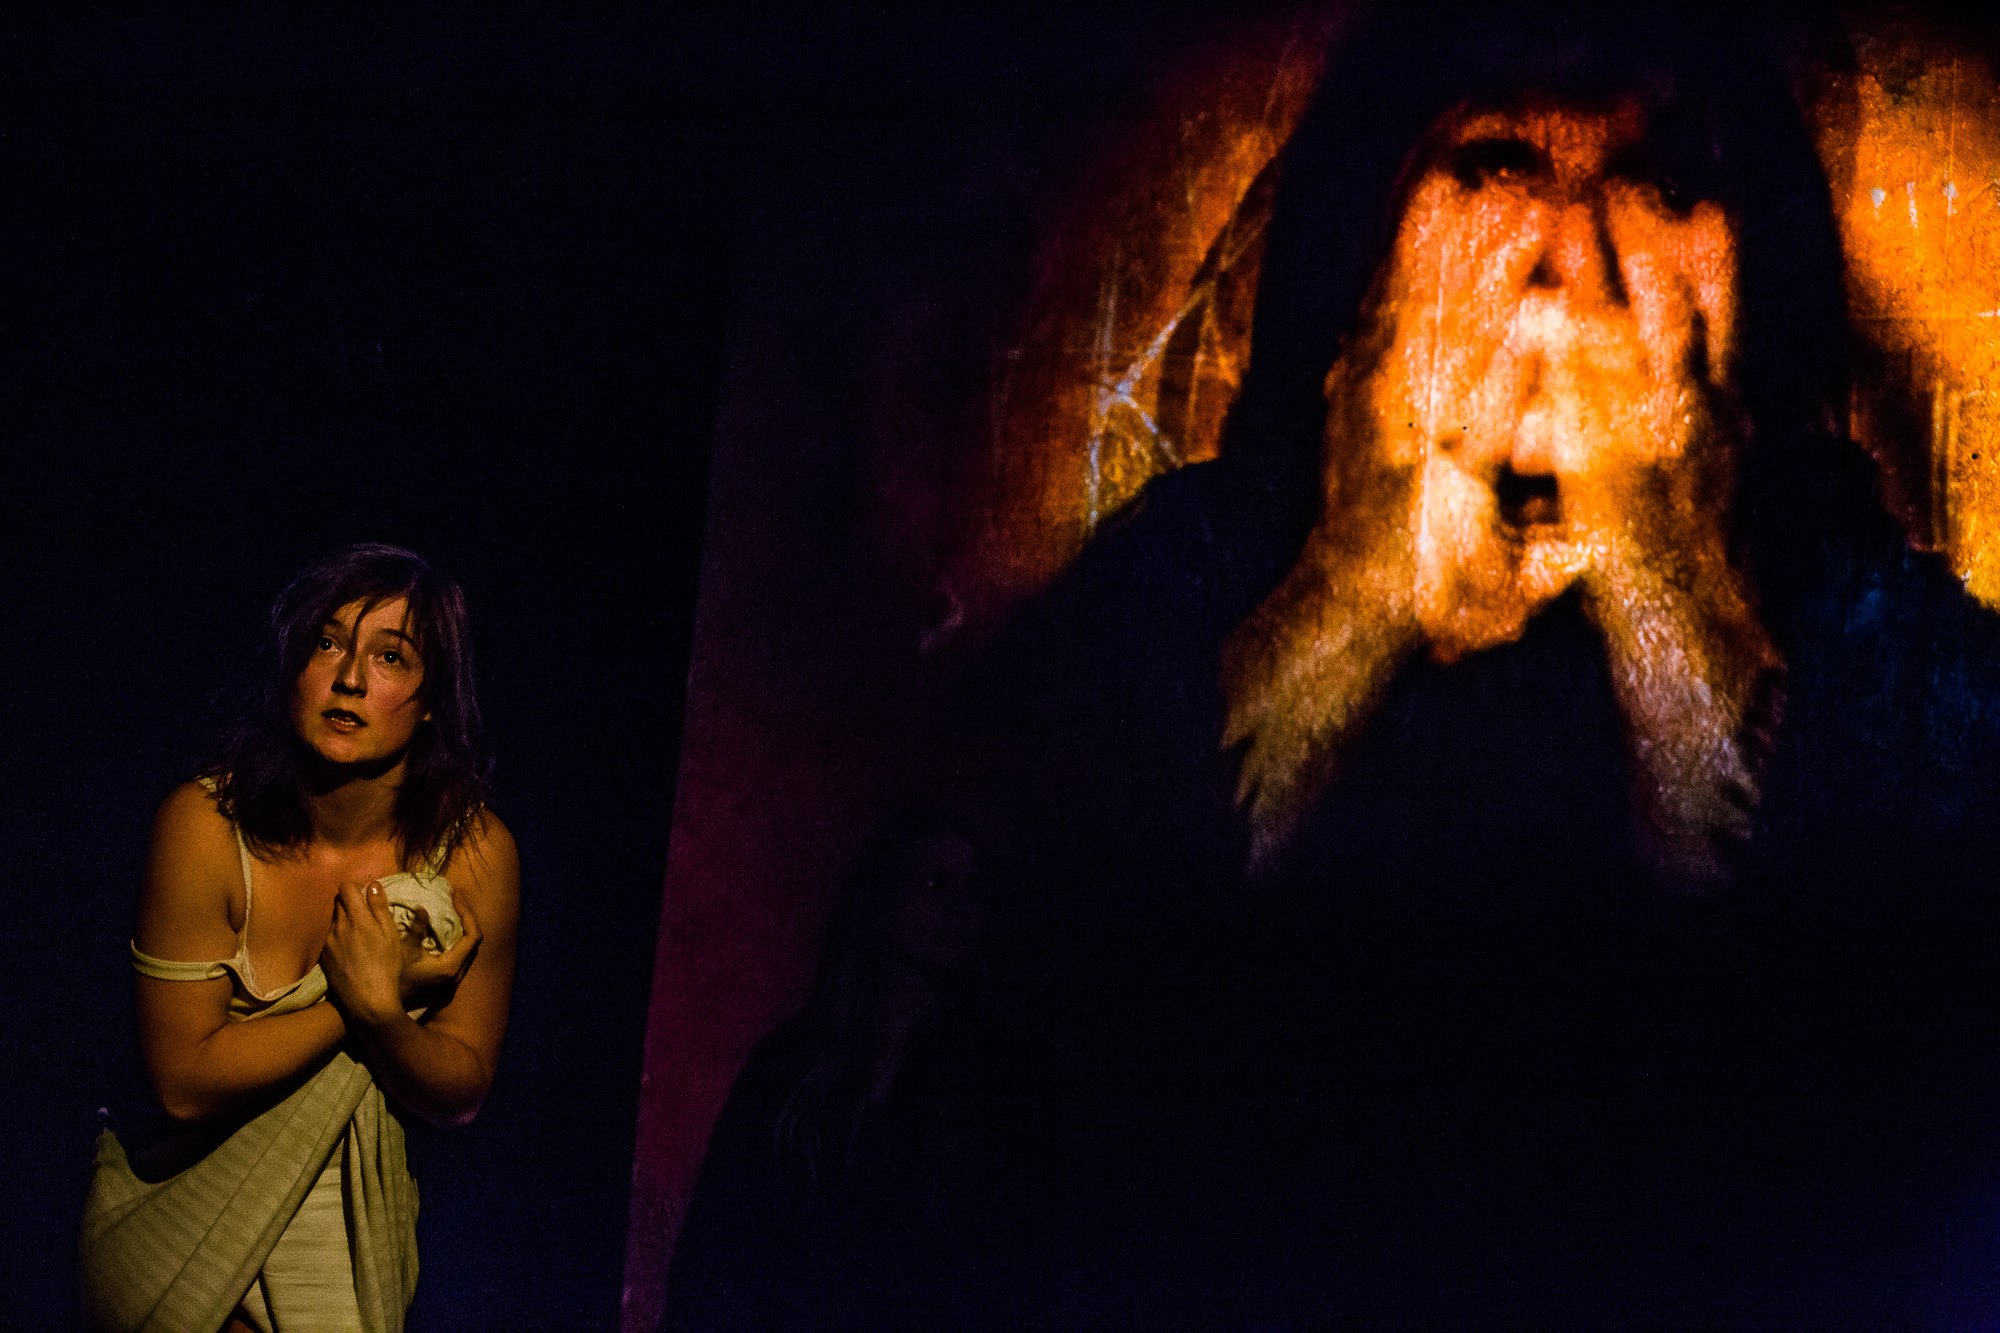 Teatr Barakah, Requiem, fot. Piotr Kubic (źródło: materiały prasowe)